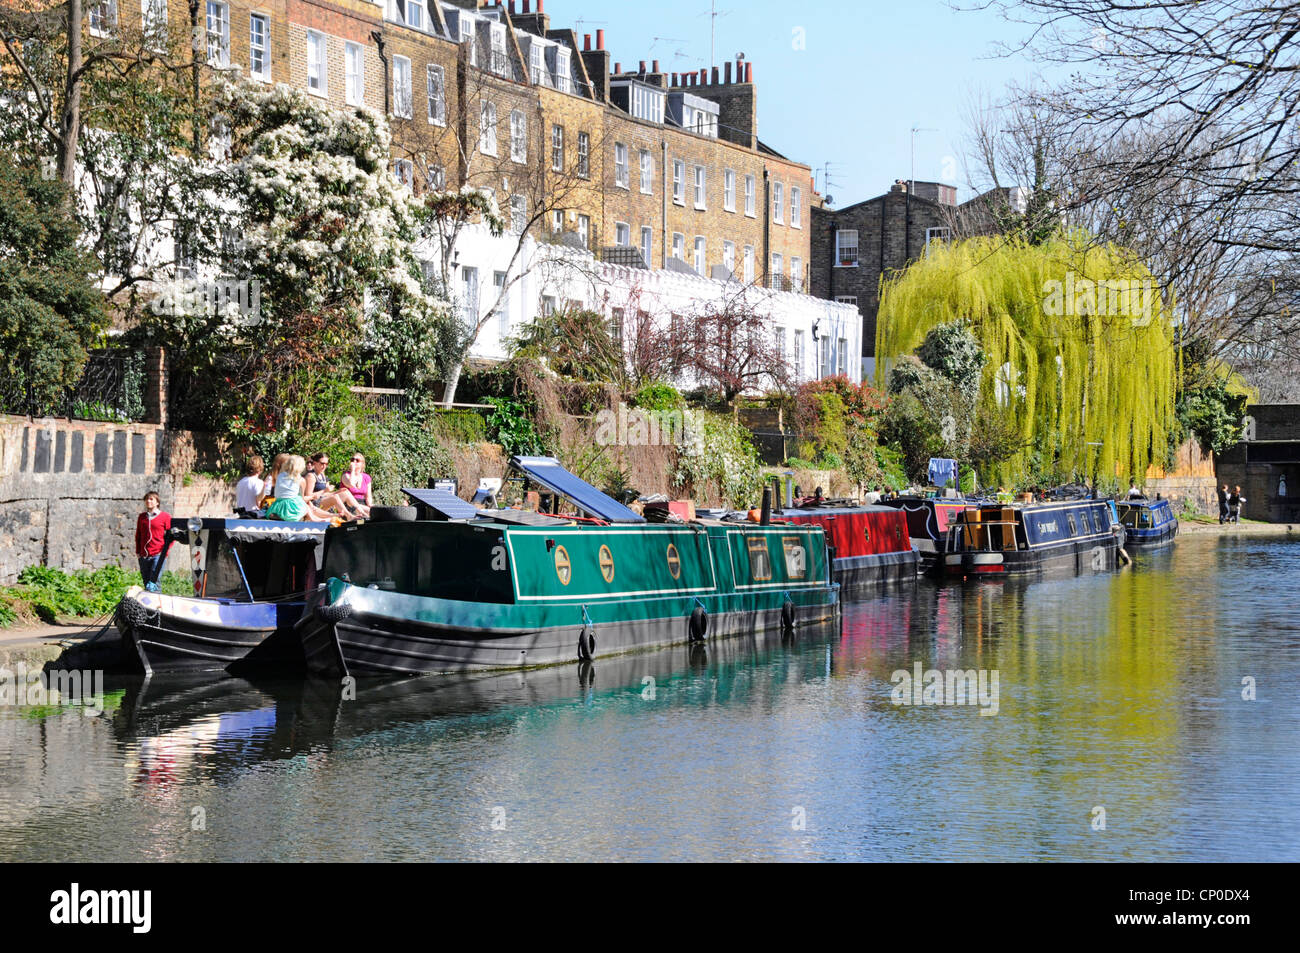 Canaux de régents ensoleillés moorings de bateau à rames et personnes de l'immobilier Sentier de randonnée couleur printanière sur le saule Weeping Islington London Angleterre Royaume-Uni Banque D'Images